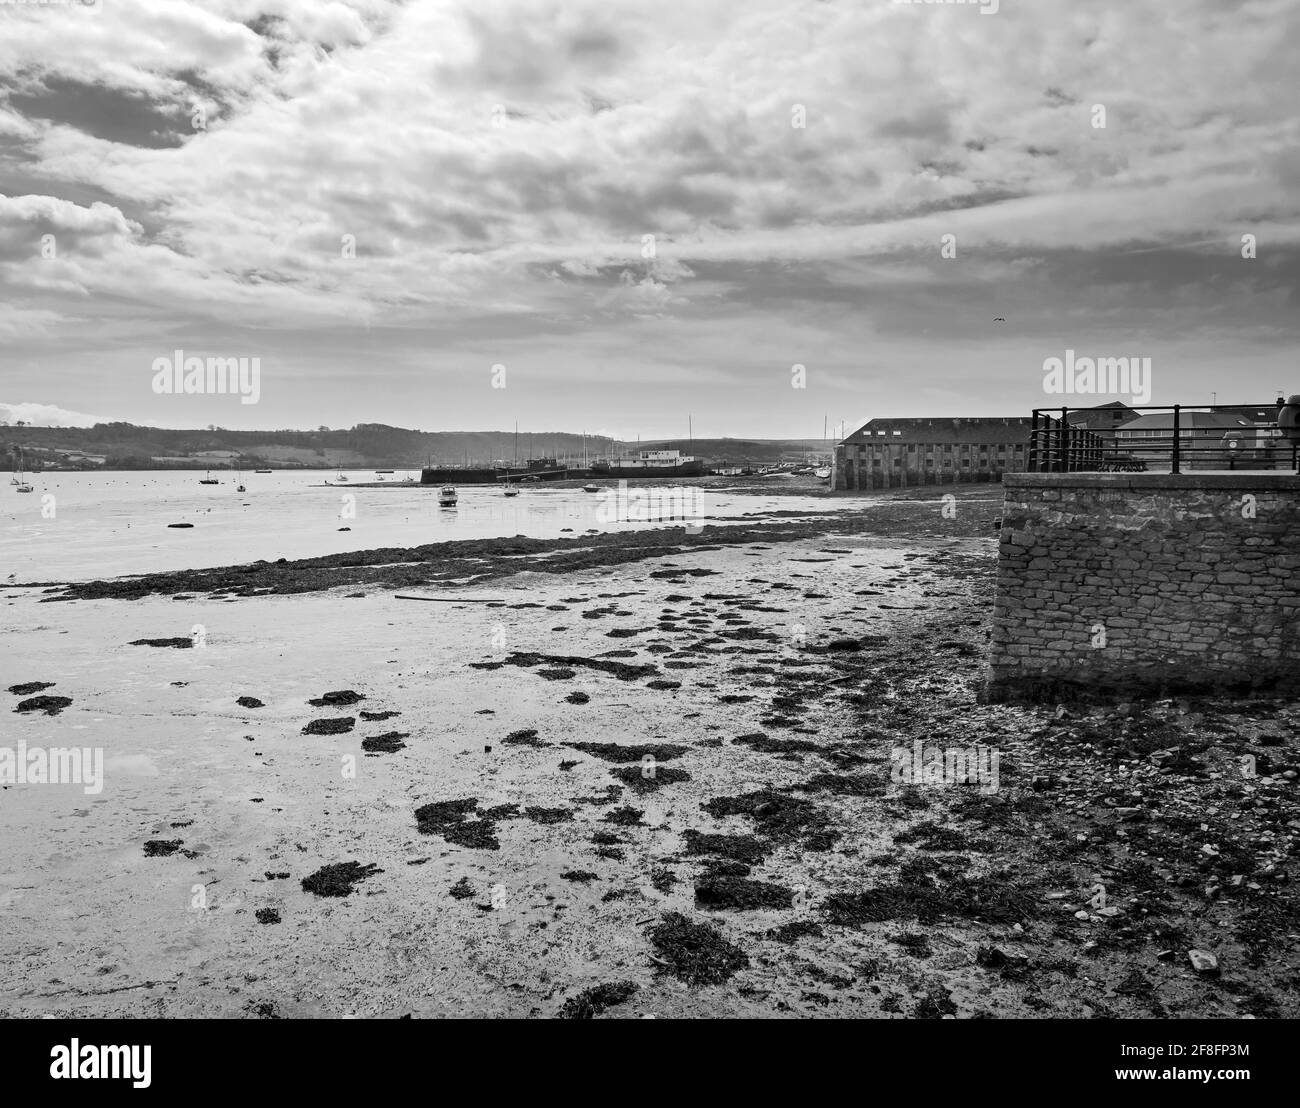 Sort de l'eau. Le bord de la rivière à Torpoint, dans le sud-est de Cornwall, avec des bateaux amarrés sur le mur du port. Dans la distance de montage Edgcumbe. Noir et blanc i Banque D'Images